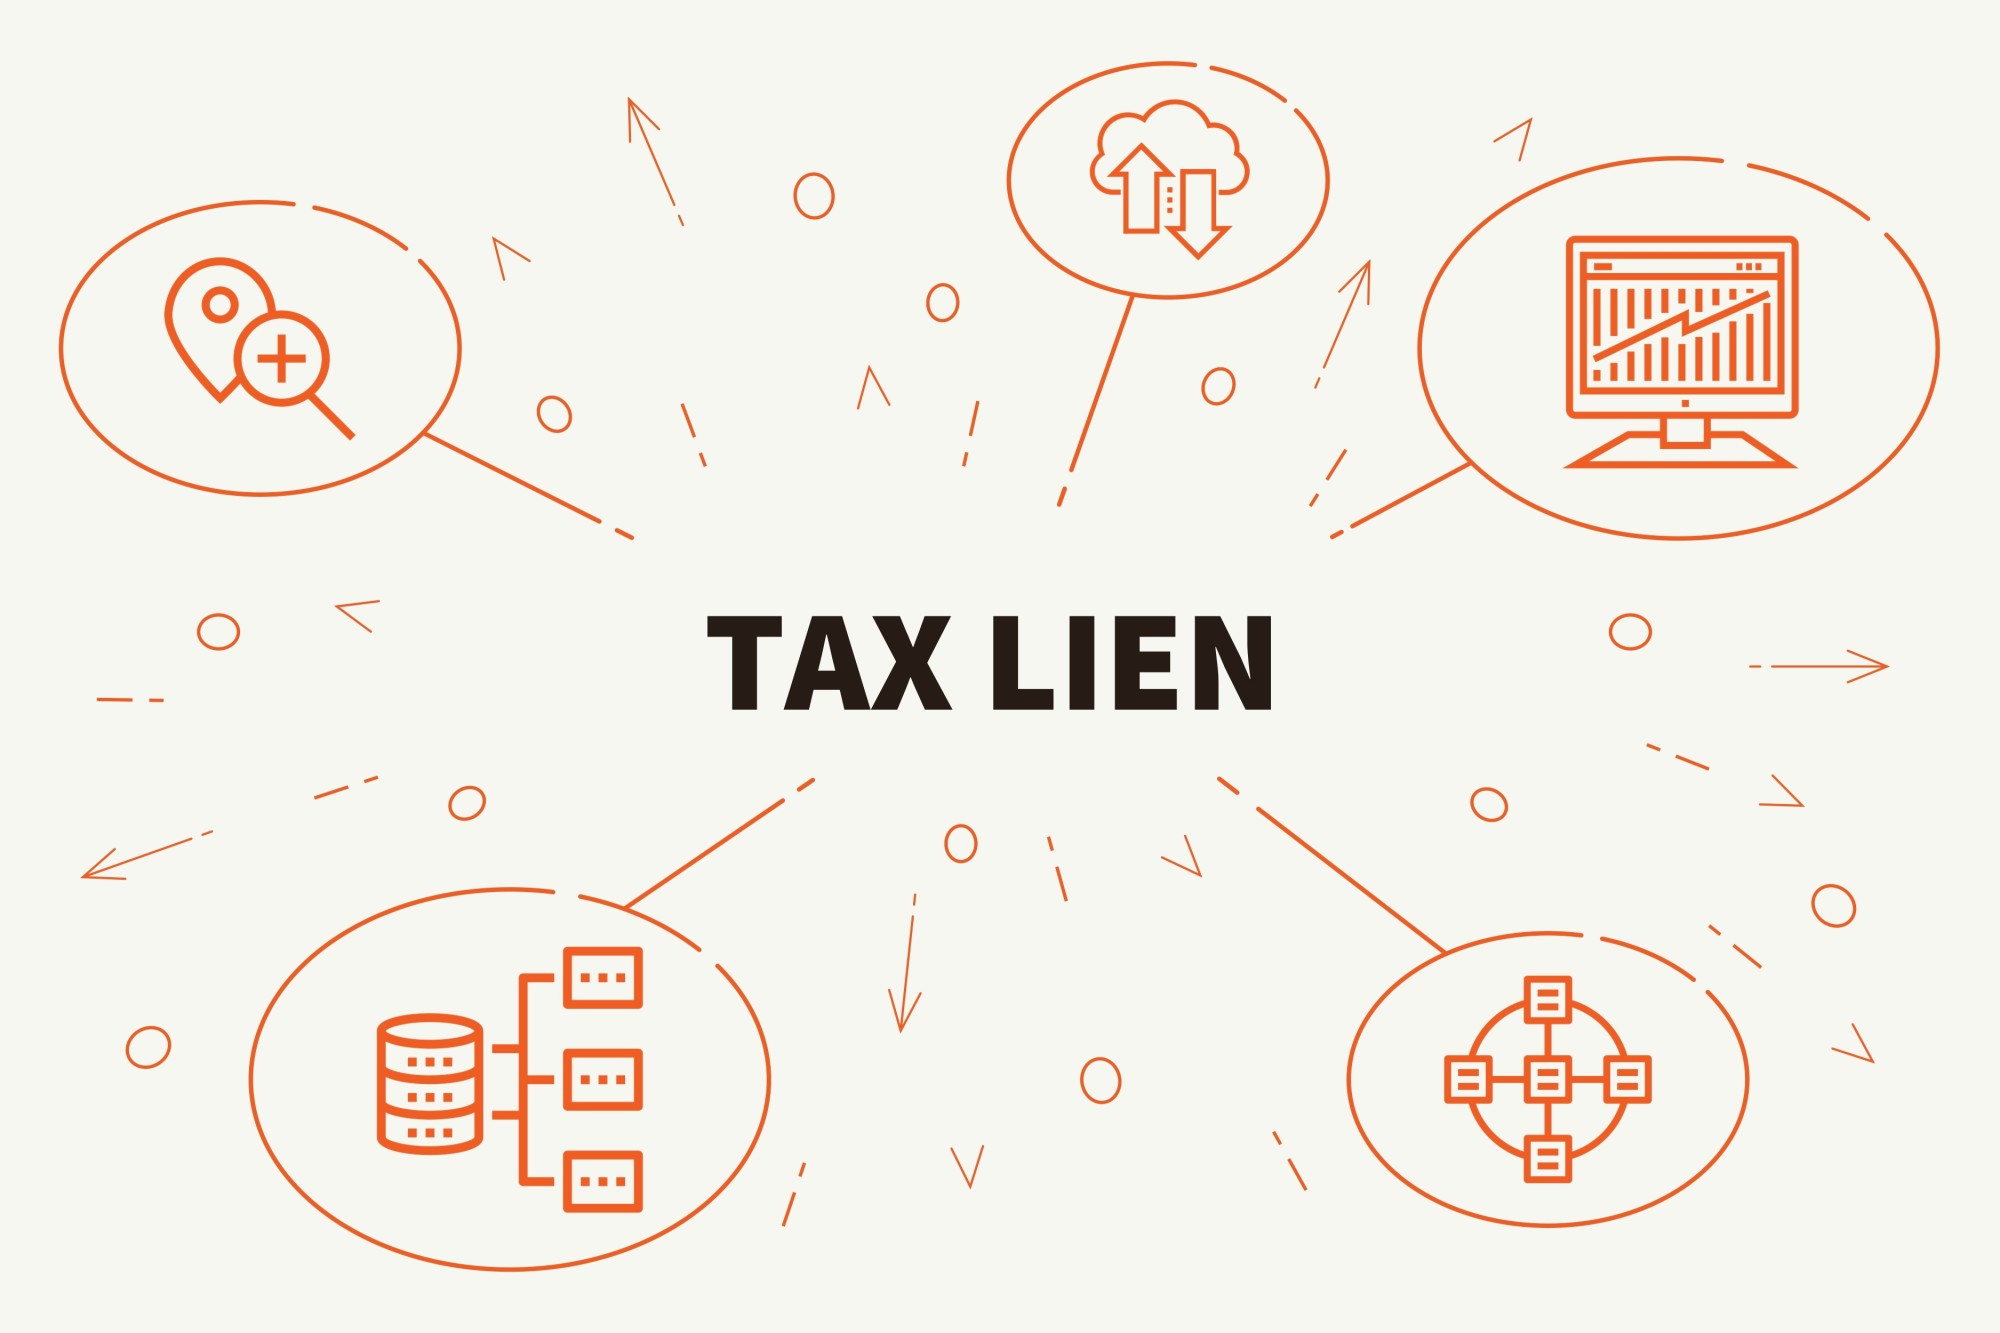 Tax lien investing 2015 calendar jadual 100 hari kit forex news